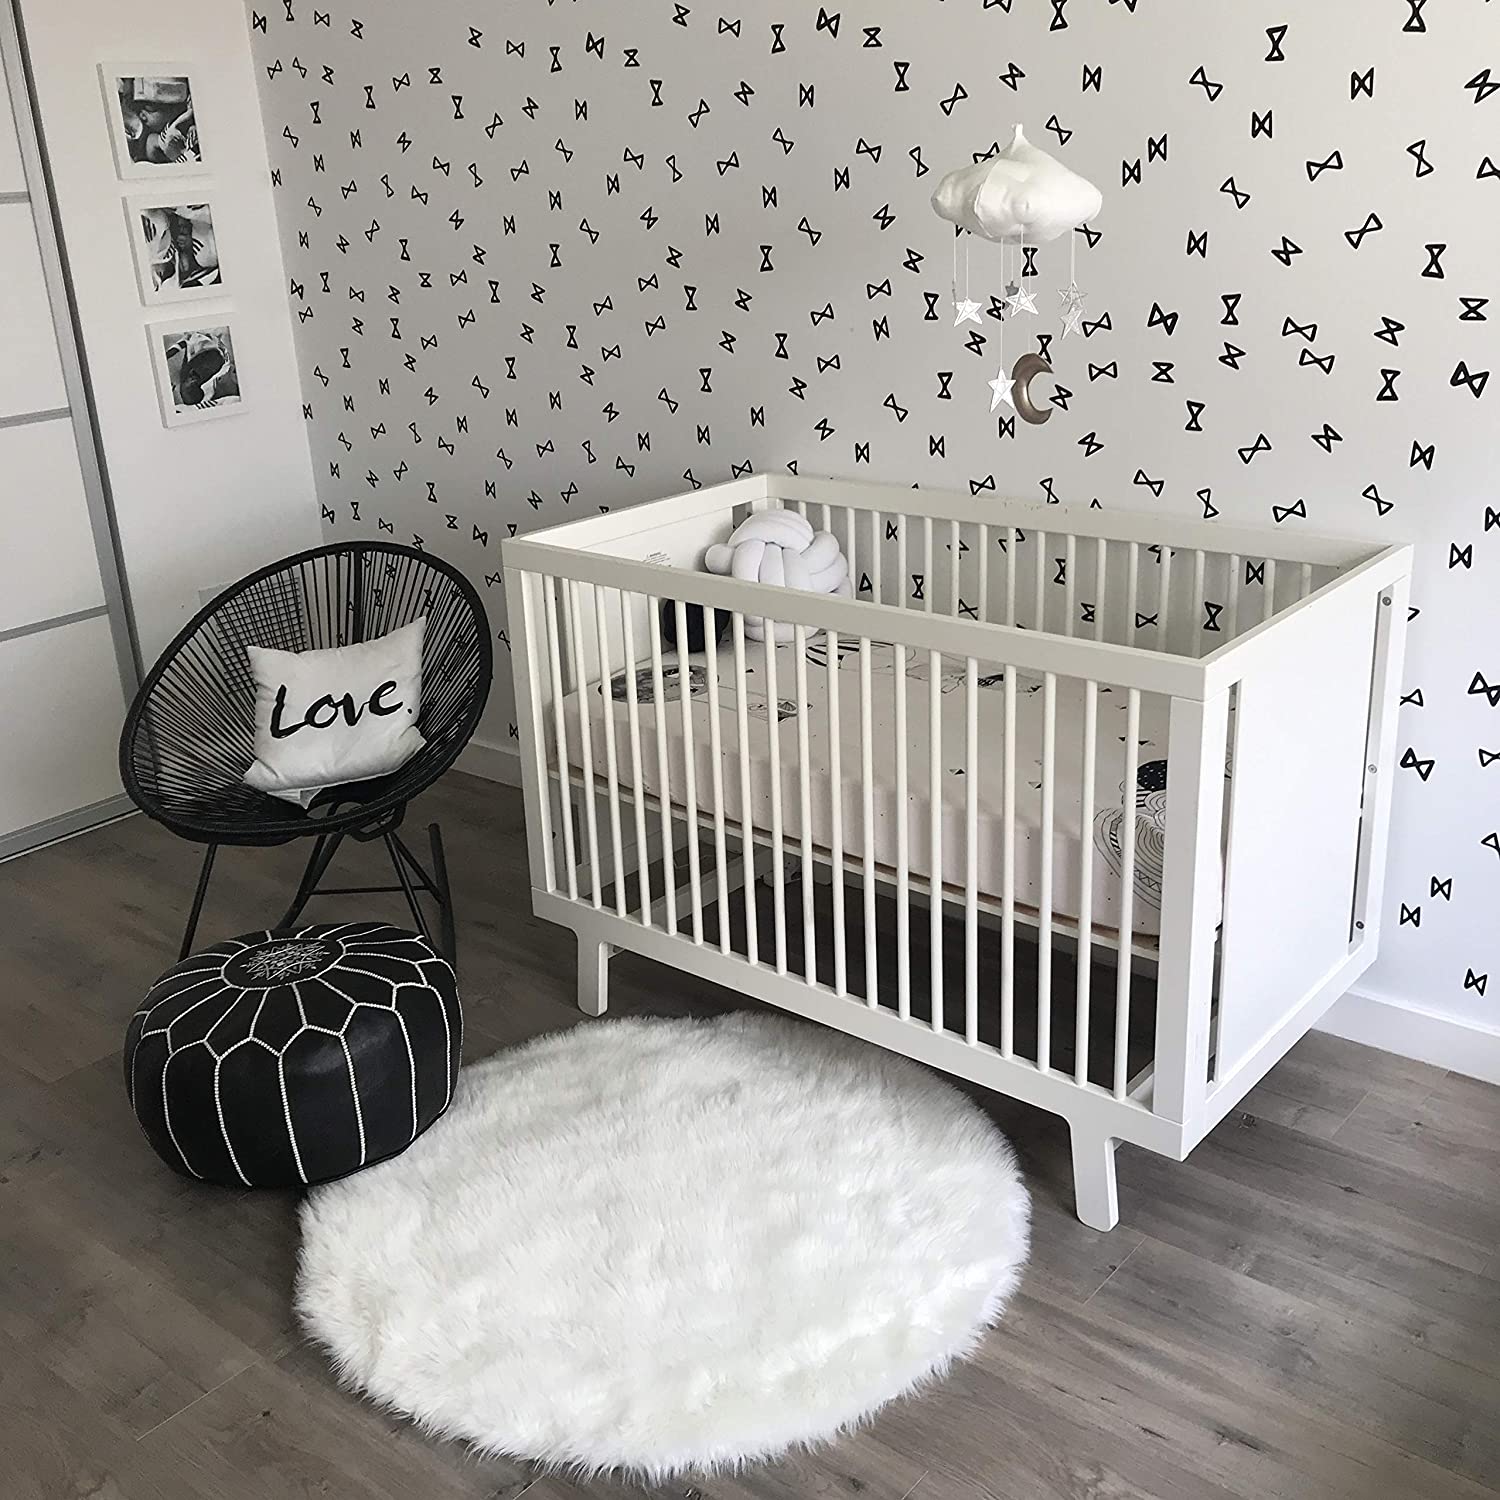 Tấm thảm lông xù màu trắng hình tròn đơn giản nhưng đủ khiến cho căn phòng của trẻ nhỏ mềm mại và gần gũi. Không chỉ dùng trong phòng em bé, nó có thể linh hoạt cho phòng khách, phòng ngủ để tạo thêm điểm nhấn thân thiện.